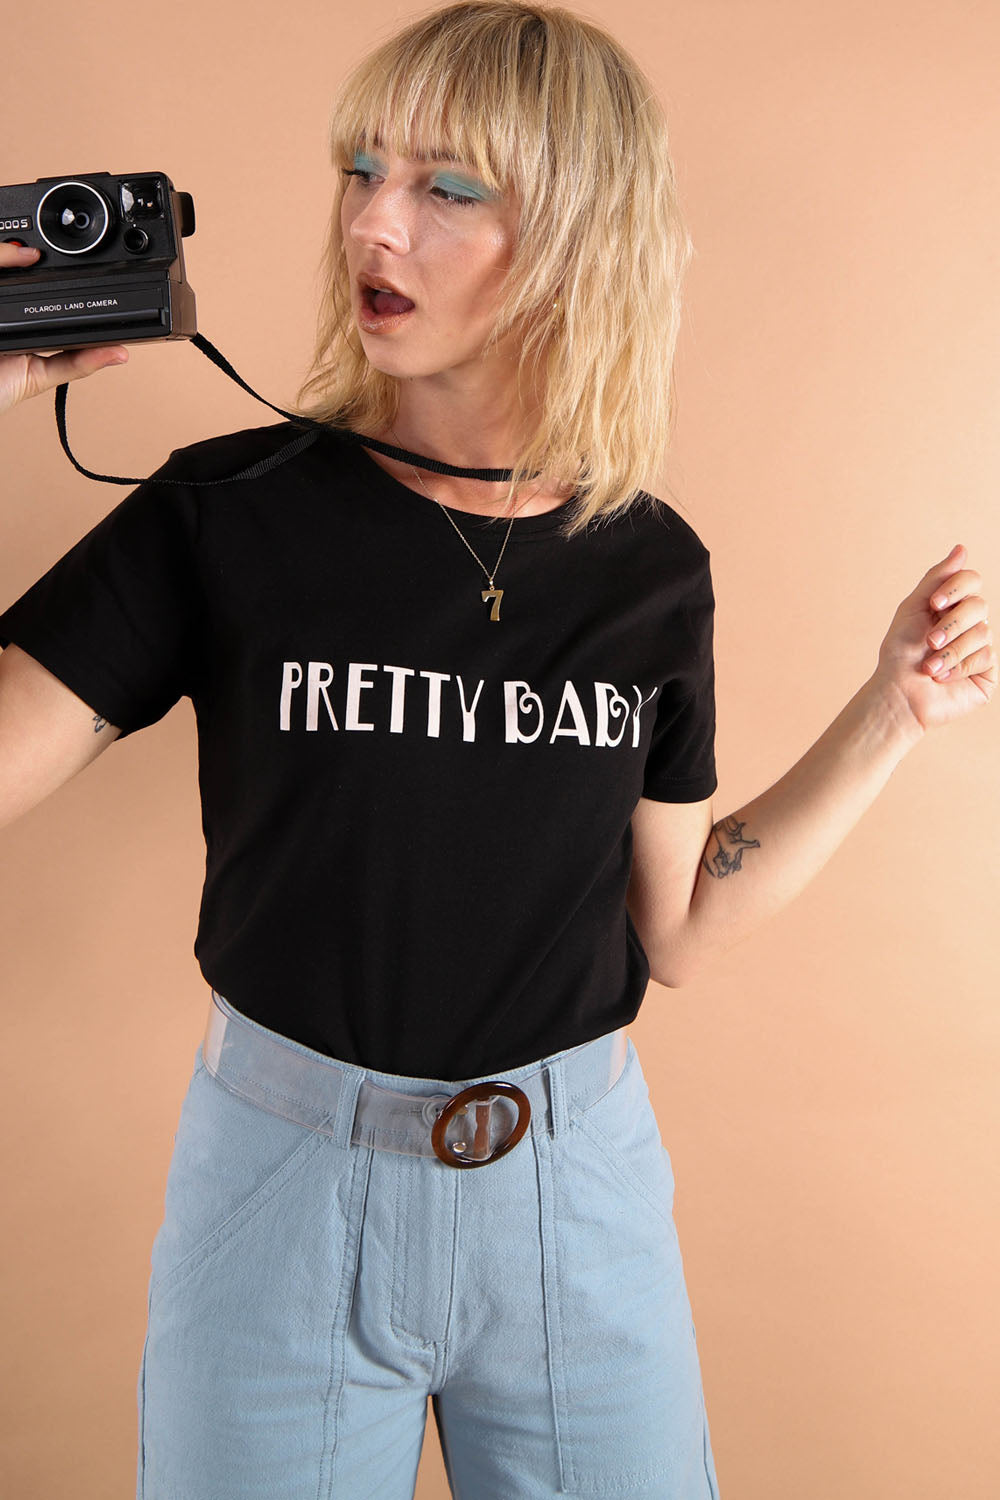 Pretty baby retro slogan t-shirt